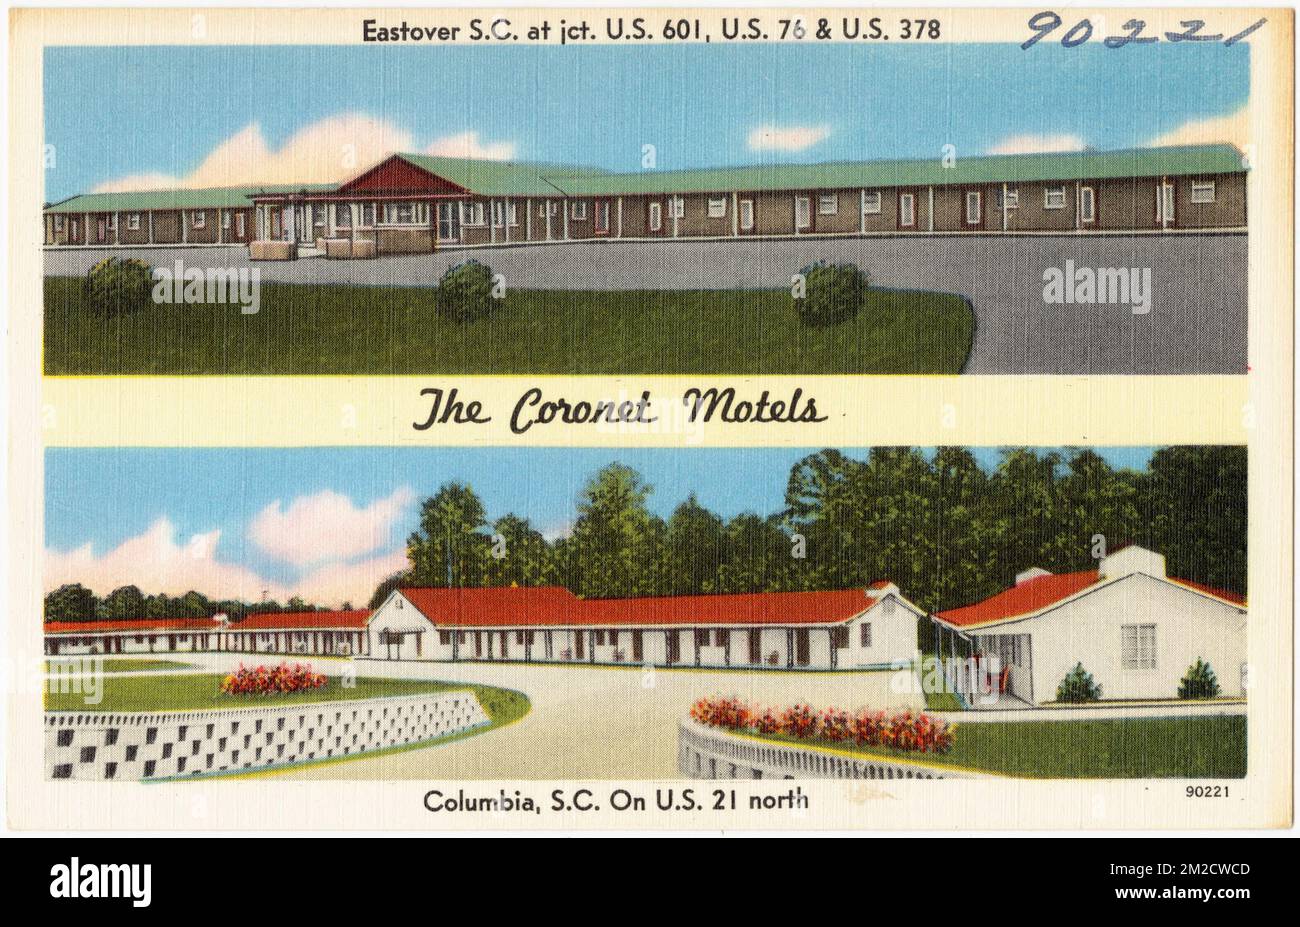 Il Coronet Motel, Eastover S. C. a jct. Stati Uniti 76 e Stati Uniti 378, Columbia, S.C., Stati Uniti 21 nord, Motel, Tichnor Brothers Collection, cartoline degli Stati Uniti Foto Stock